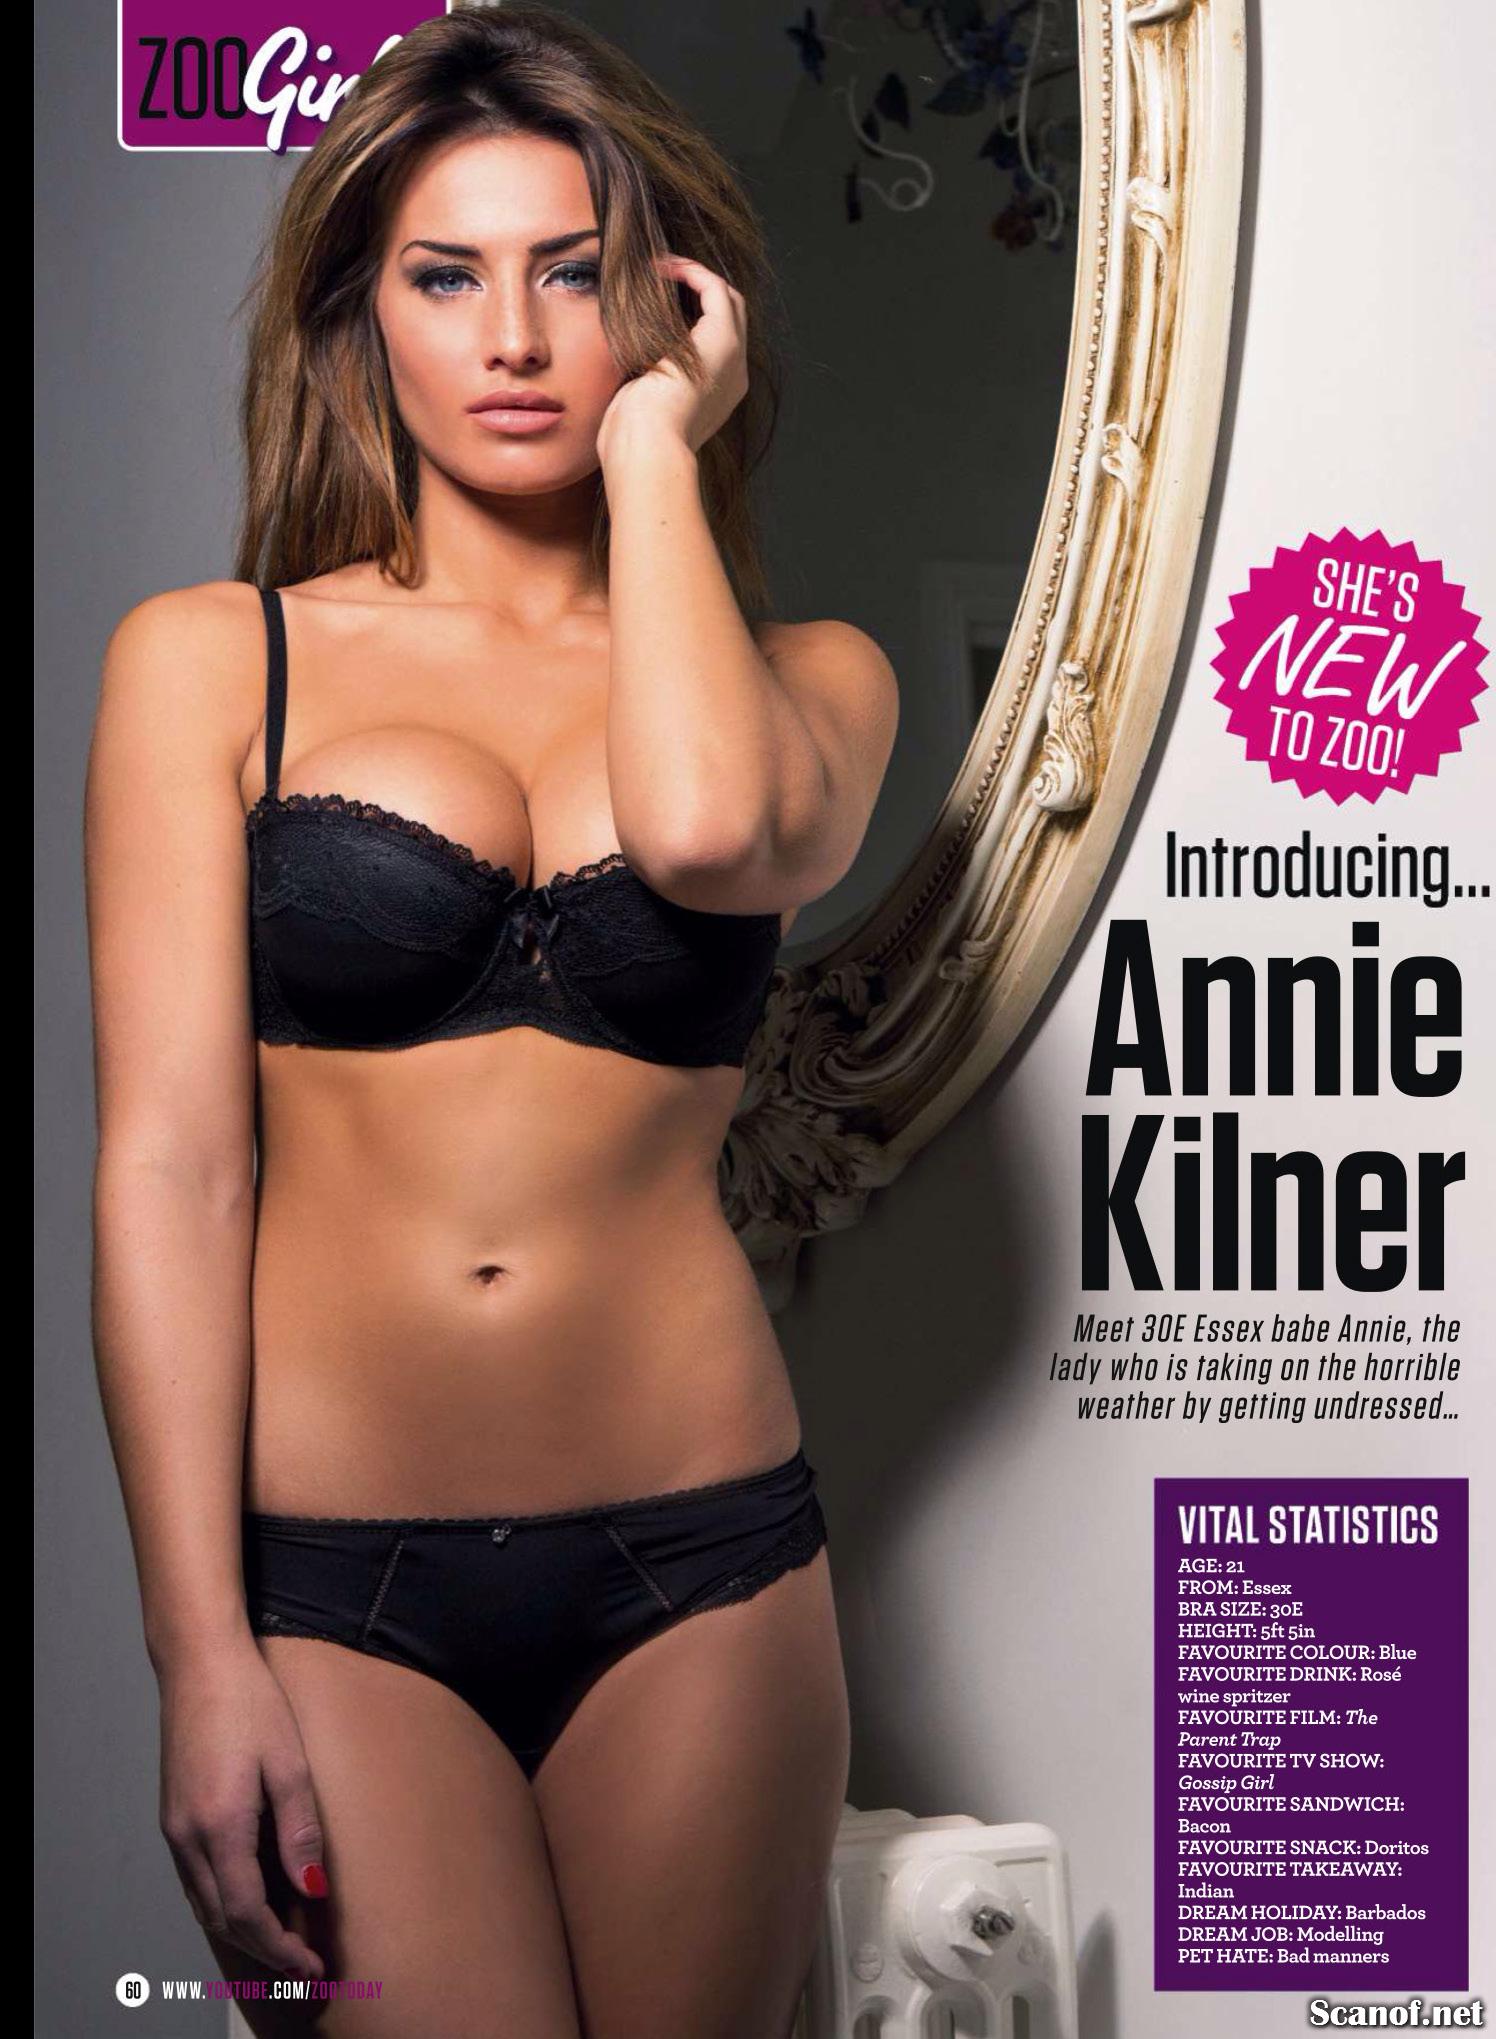 Annie Kilner is New to Zoo Magazine